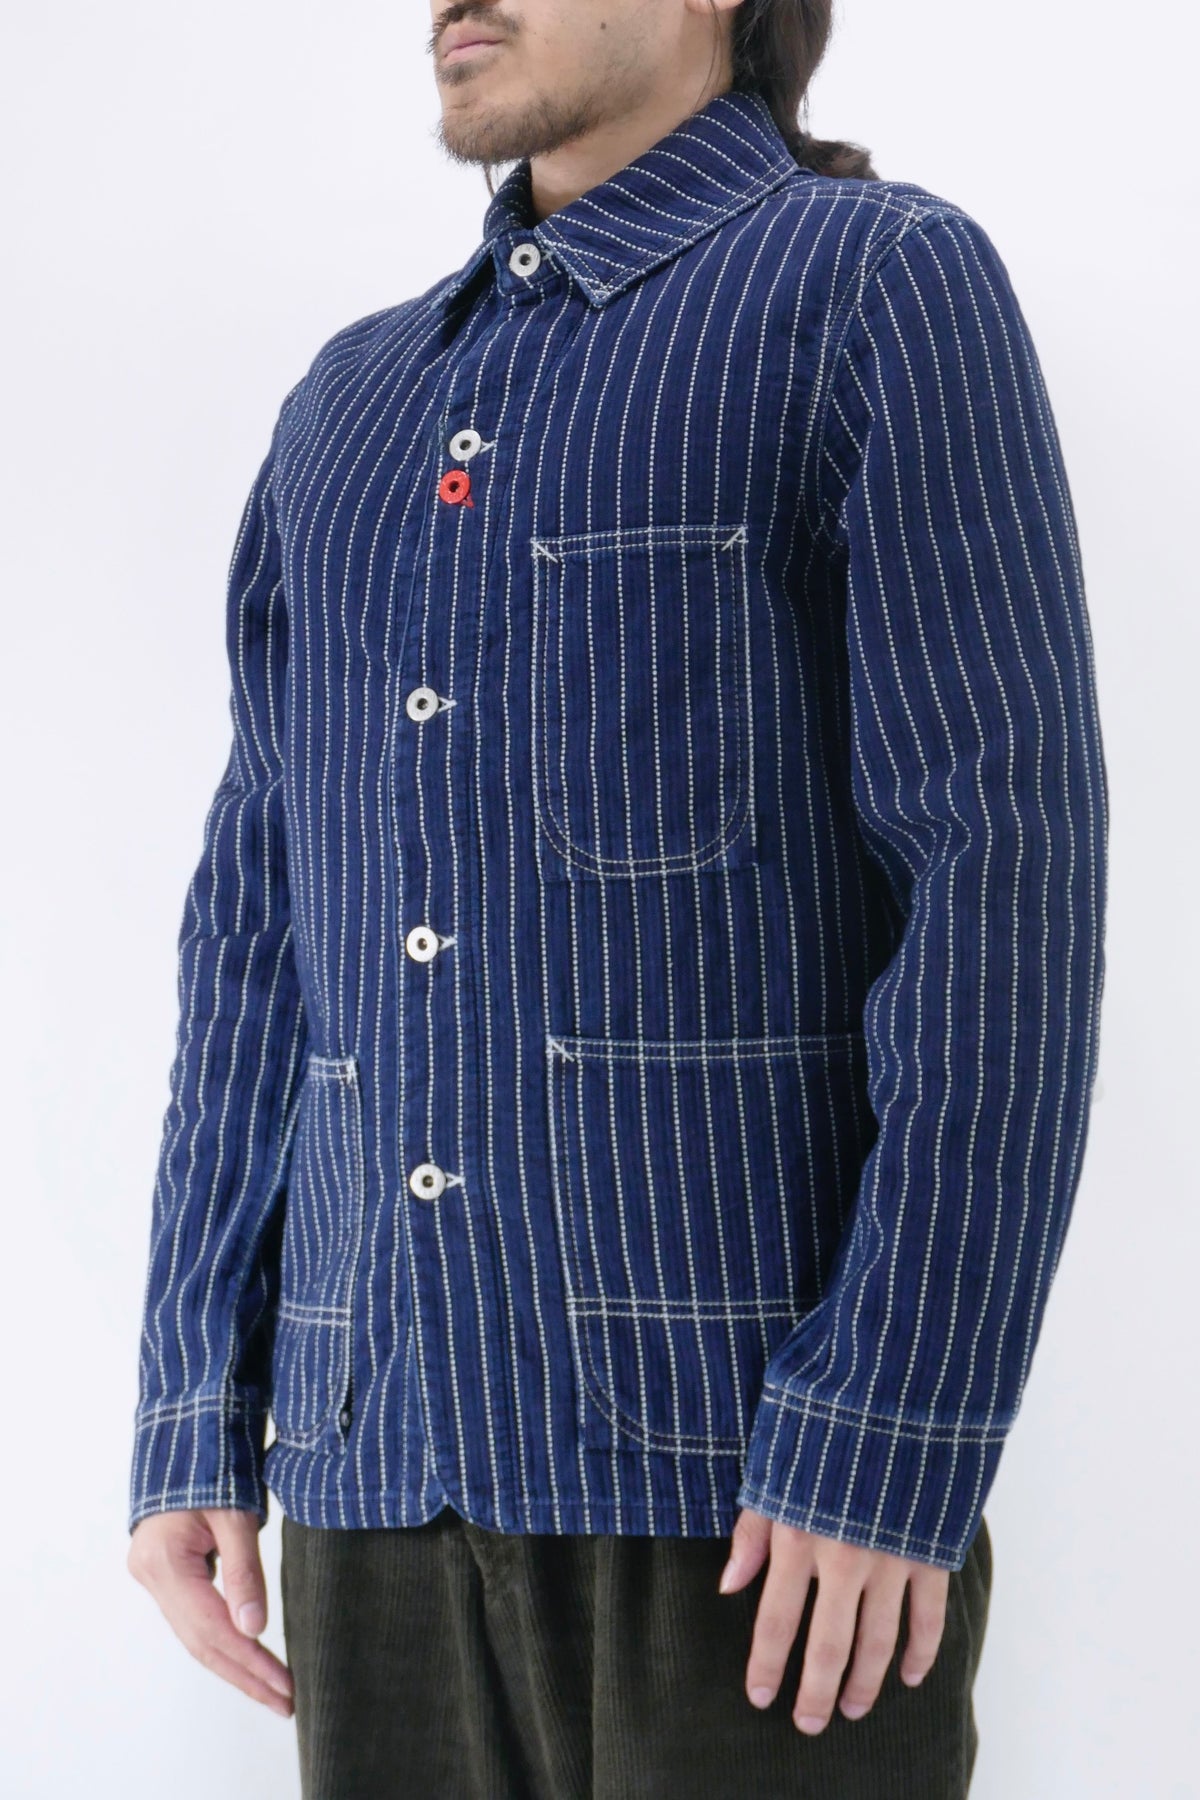 Kenzo Stone Workwear Jacket - Denim